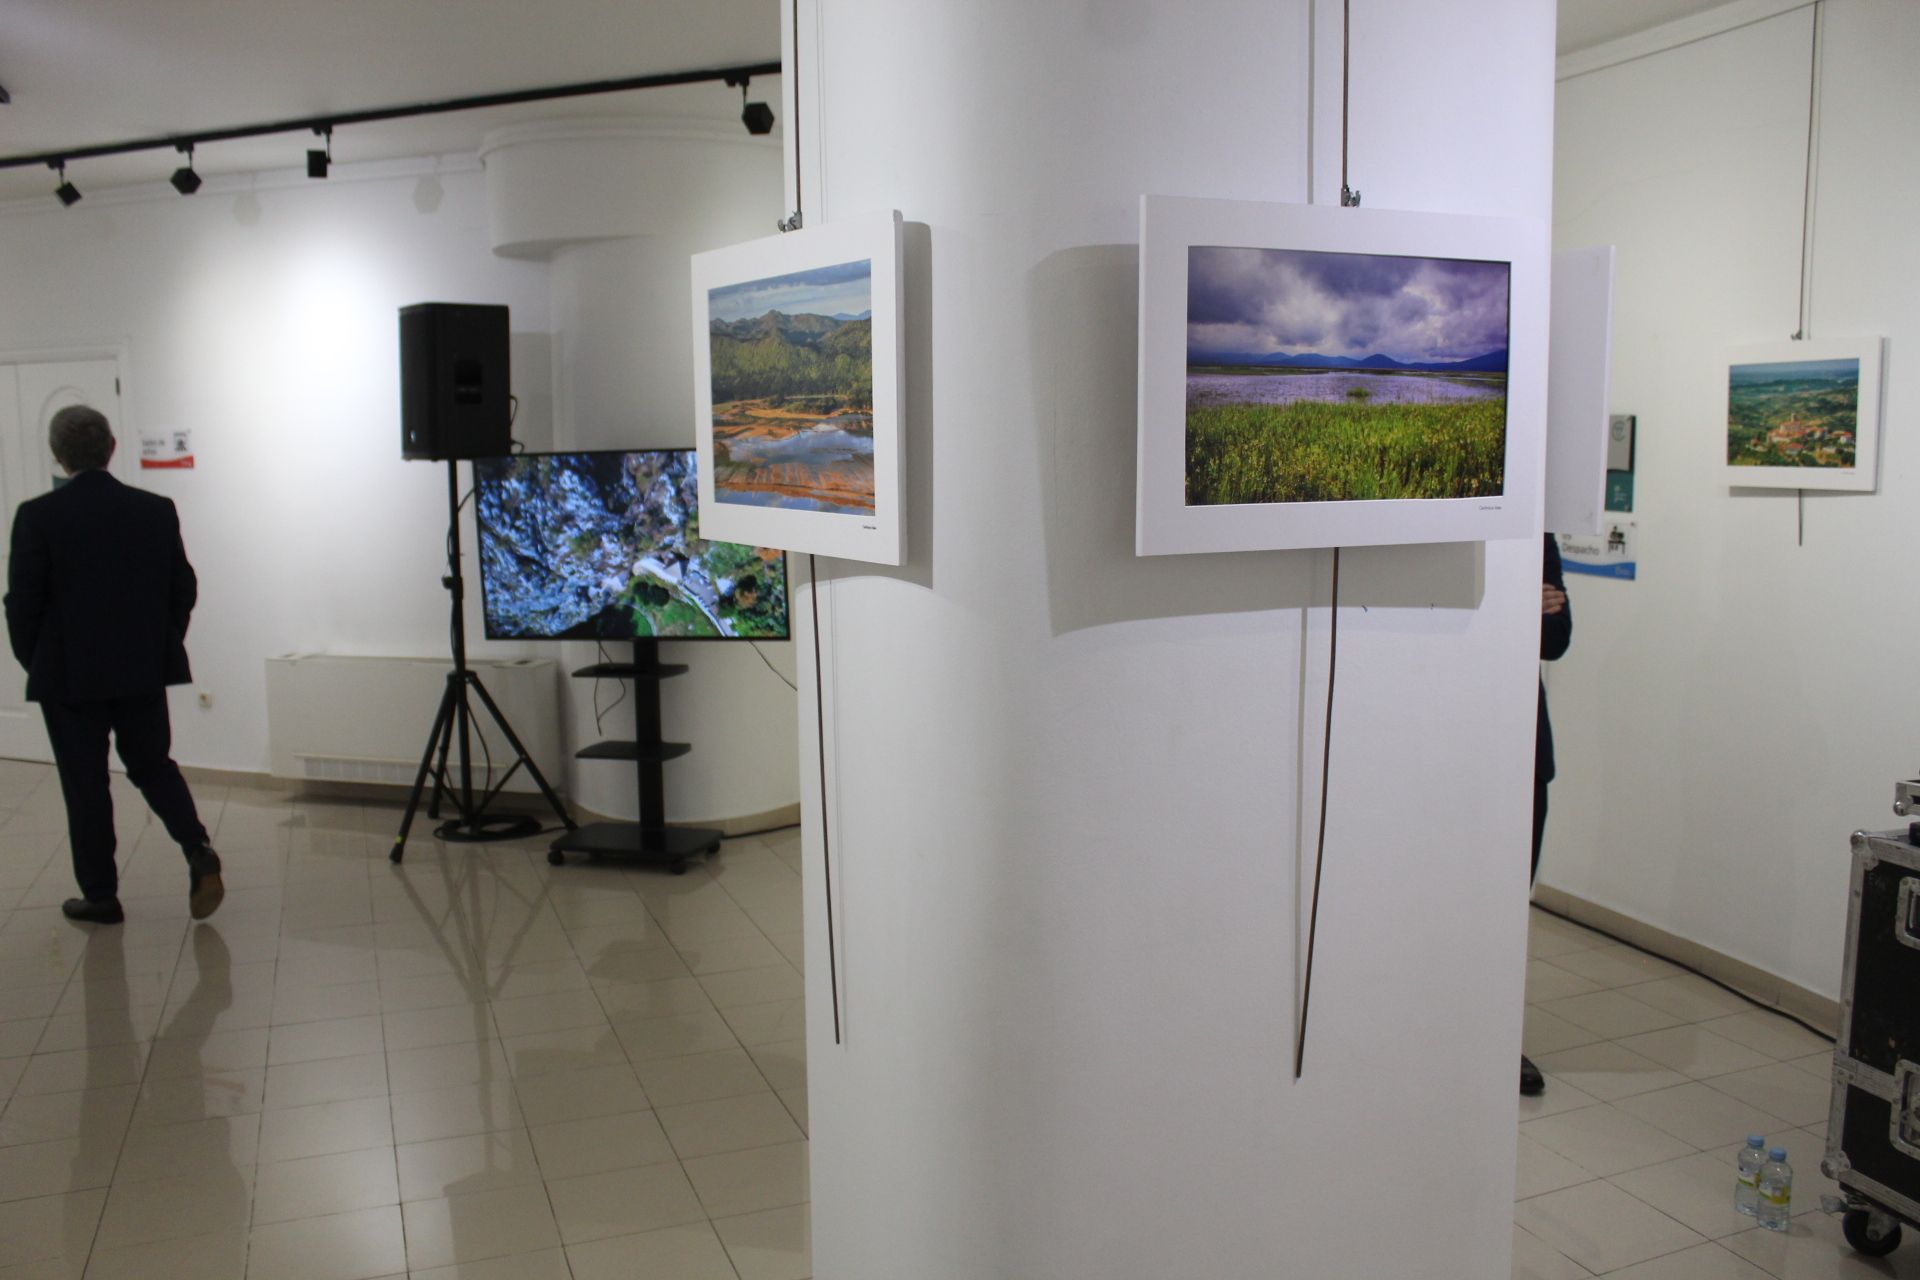 Presentación de la exposición "Maravillas de Eslovenia" de Janez Kramar